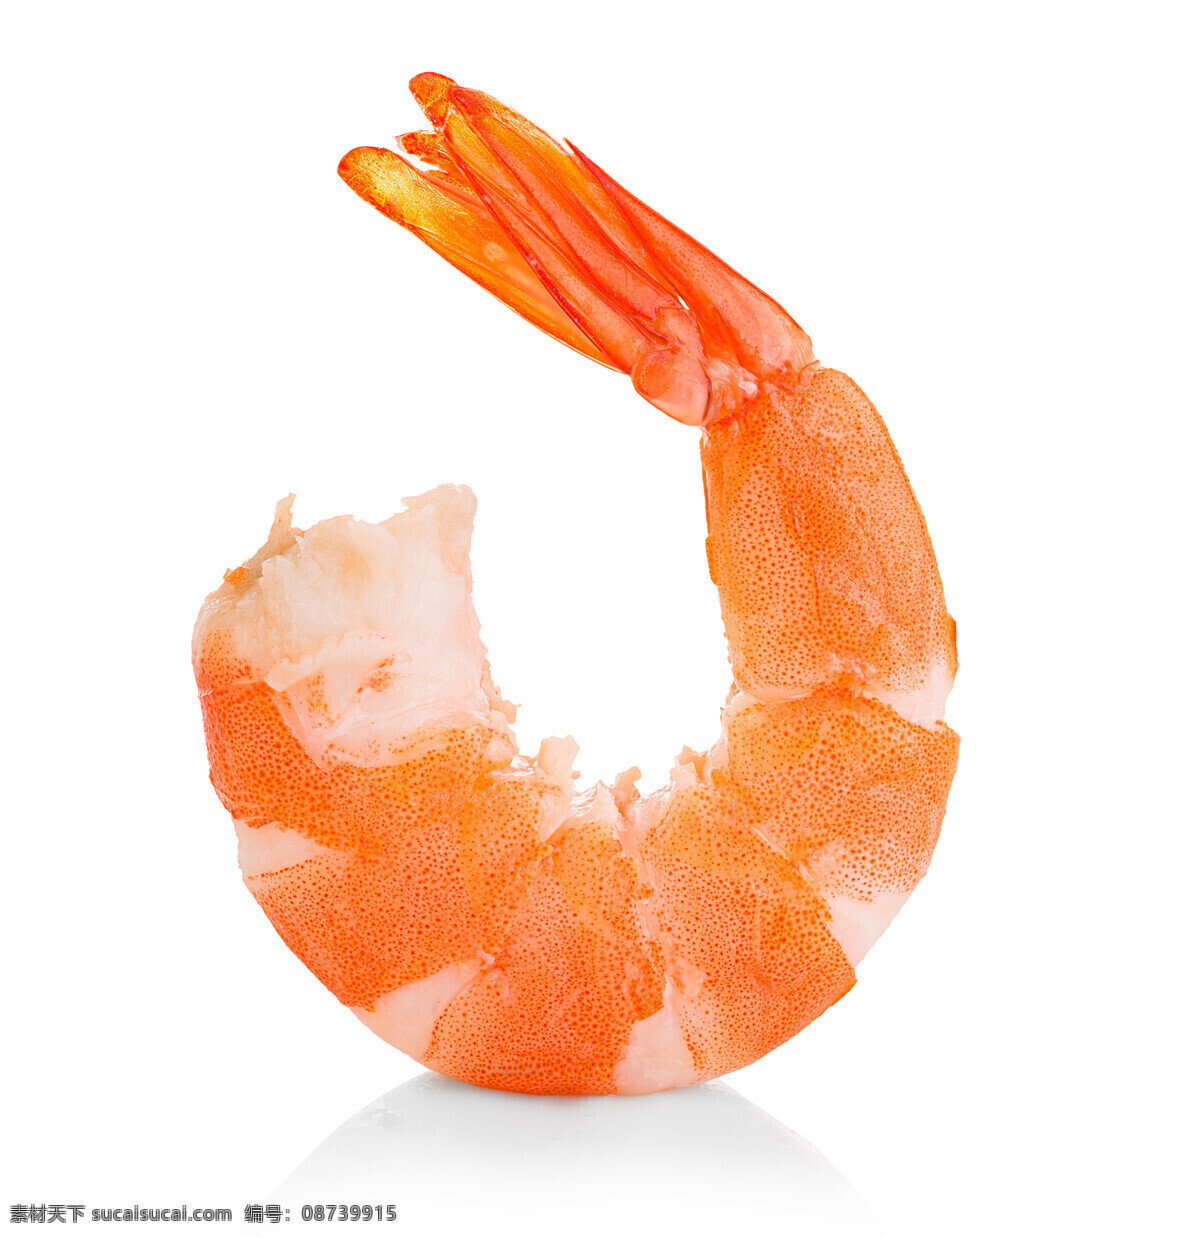 大虾 虾肉 海鲜 对虾 精美 美食 美味 酒店 菜品 餐饮美食 食物原料